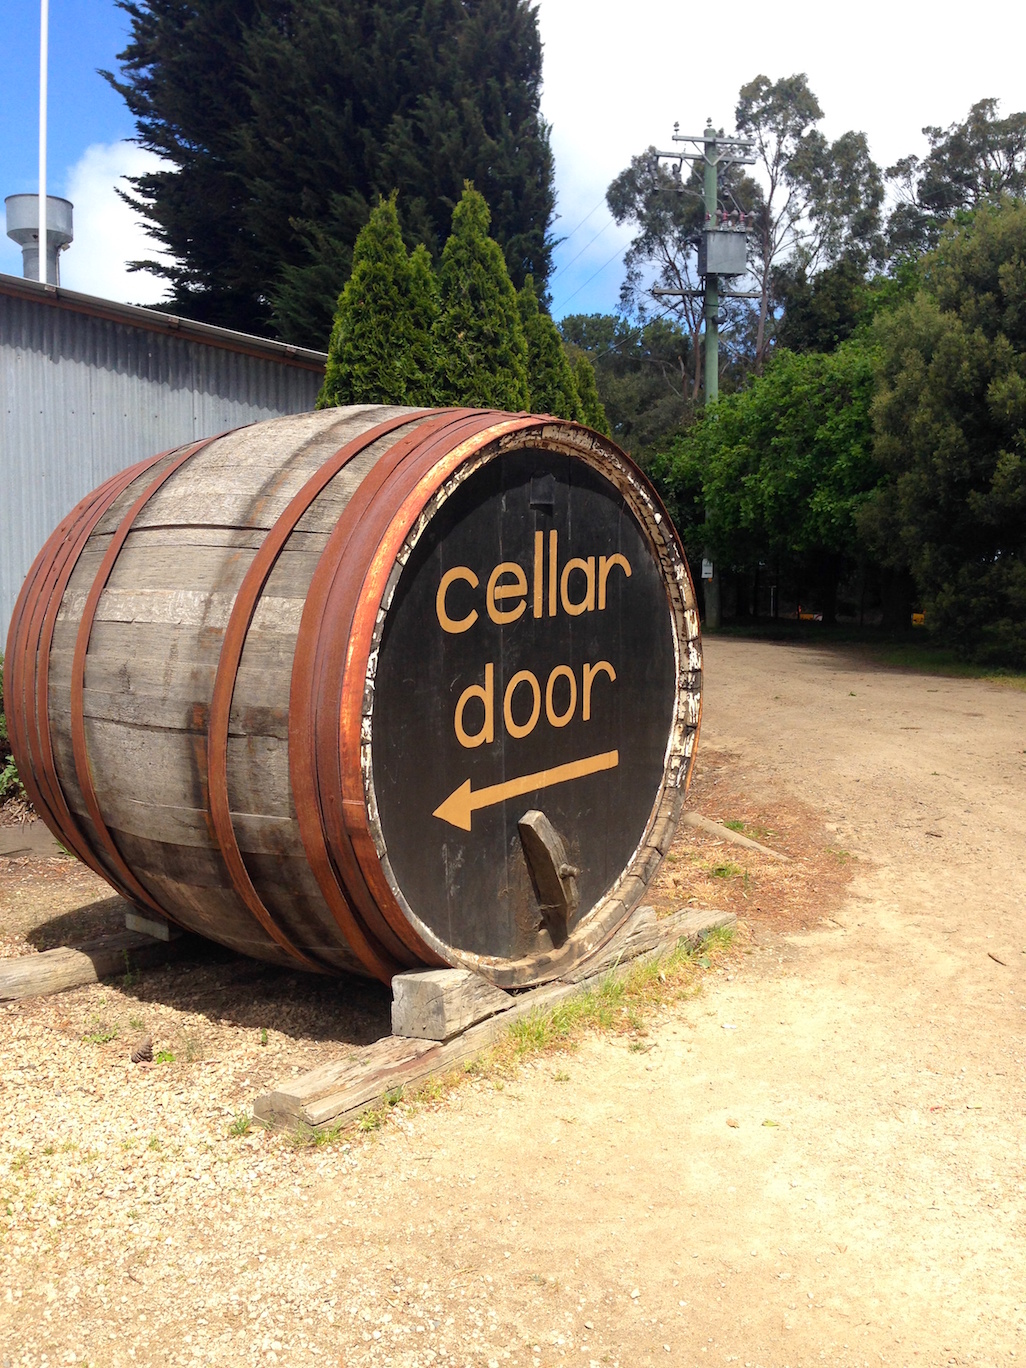 T'Gallant cellar door Mornington Peninsula wine region